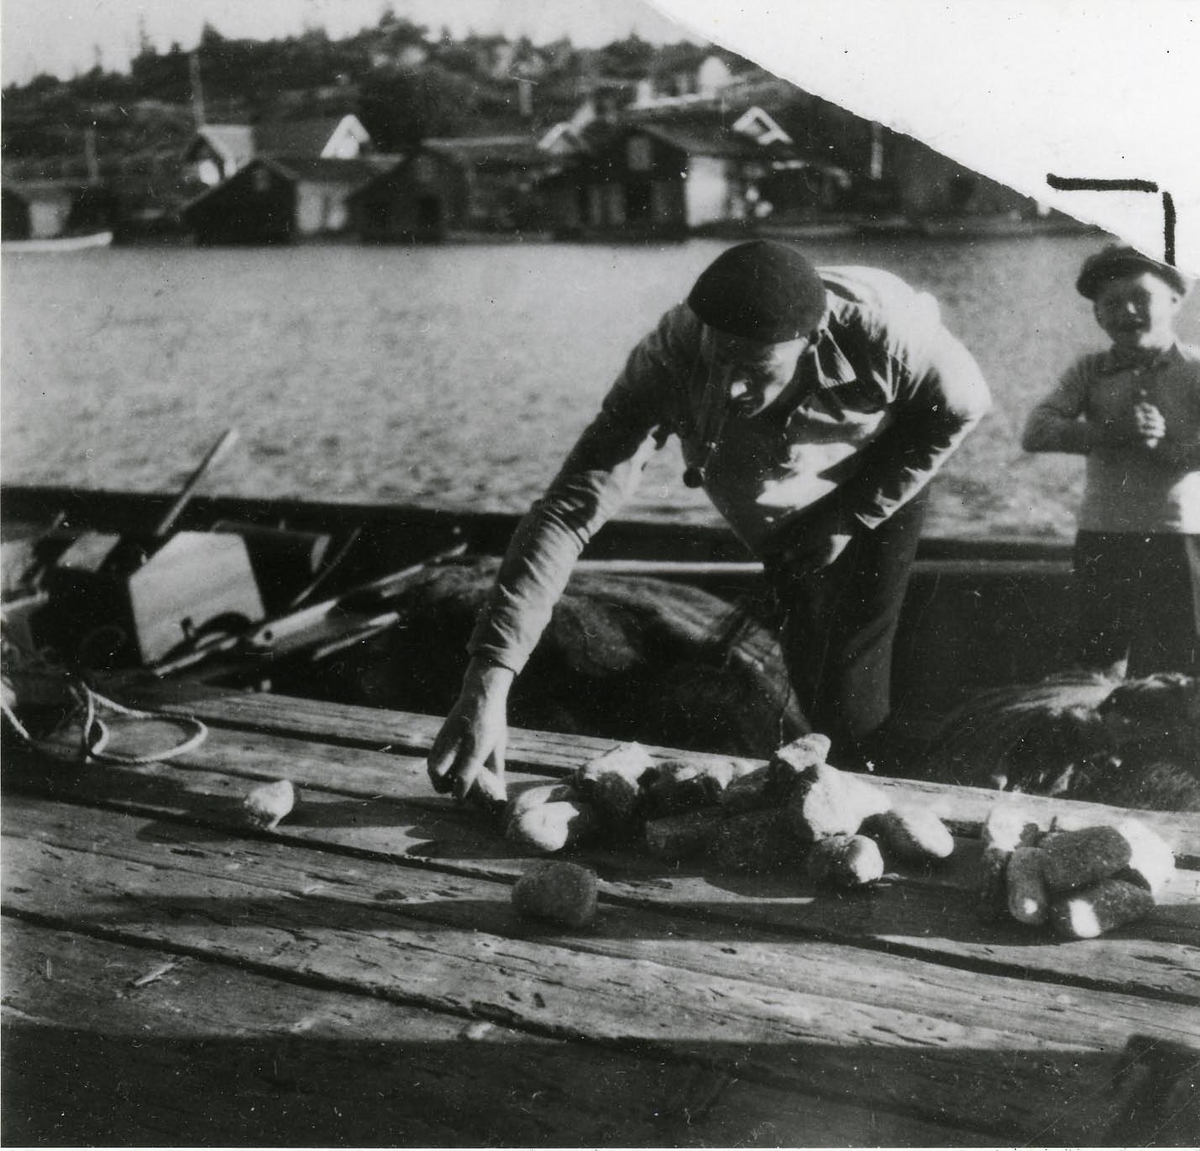 Ångermanland, Trysunda. Fiskaren Leonard Lundgren stenar (dvs. förser skötarna med stensänken) skötar före utfärden till fiskeplatsen.
Fotot från början av 1930-talet.